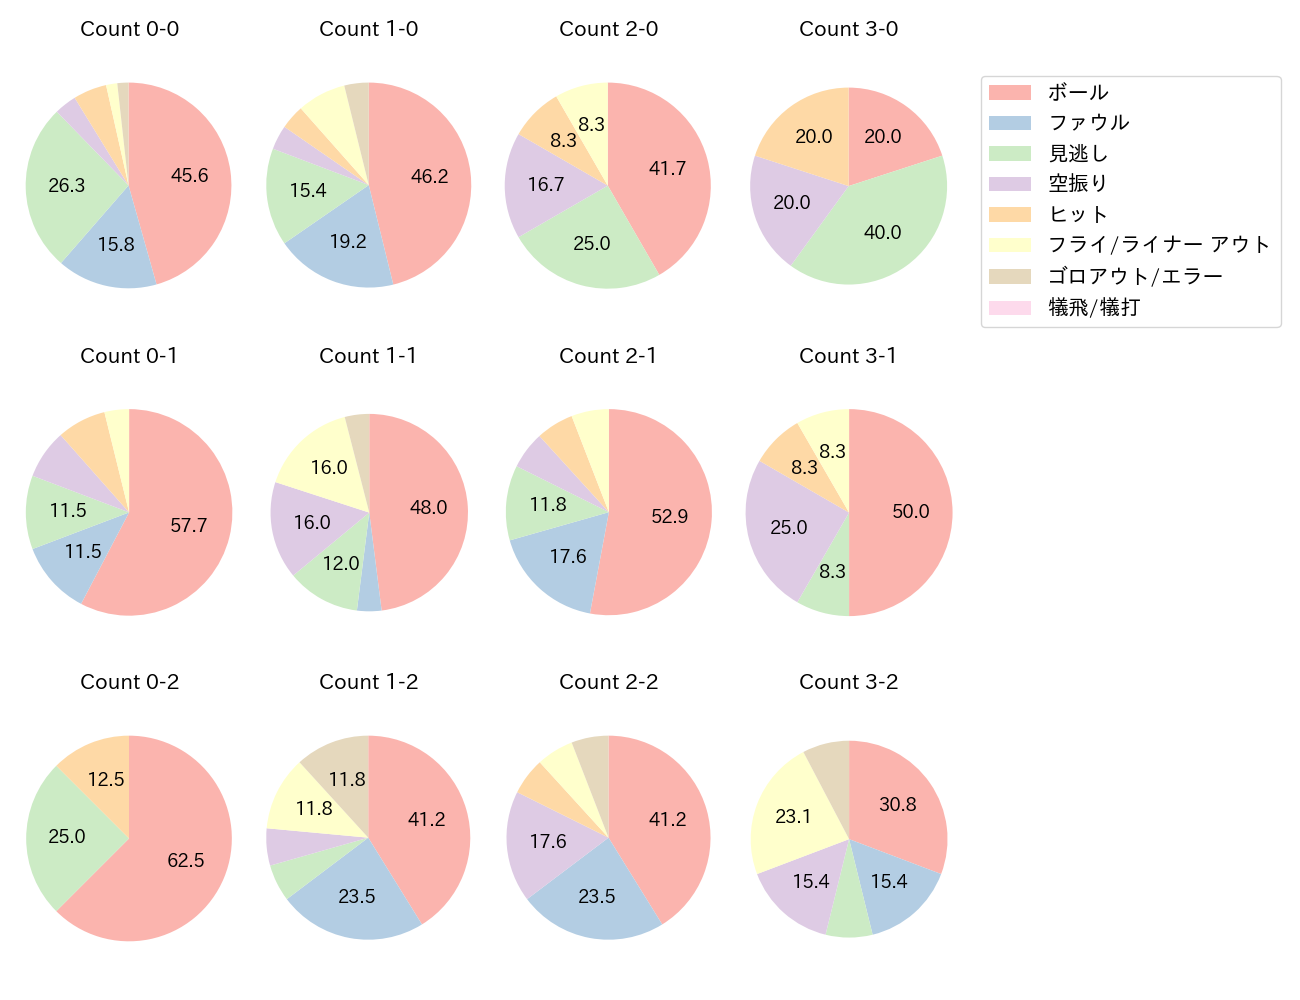 大山 悠輔の球数分布(2022年7月)